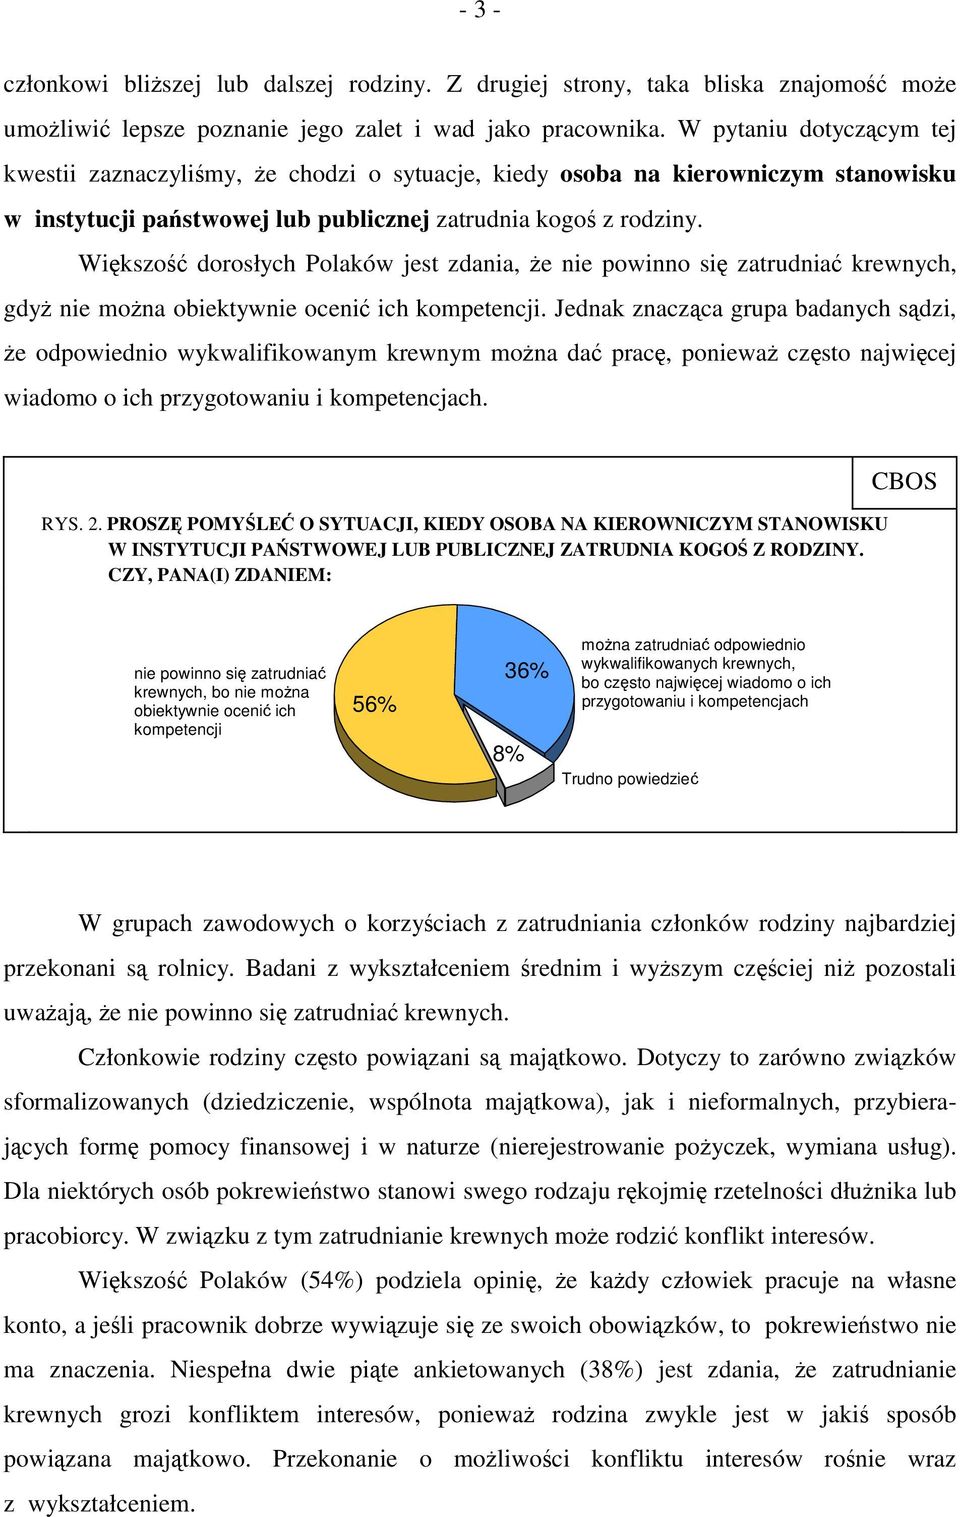 Większość dorosłych Polaków jest zdania, że nie powinno się zatrudniać krewnych, gdyż nie można obiektywnie ocenić ich kompetencji.